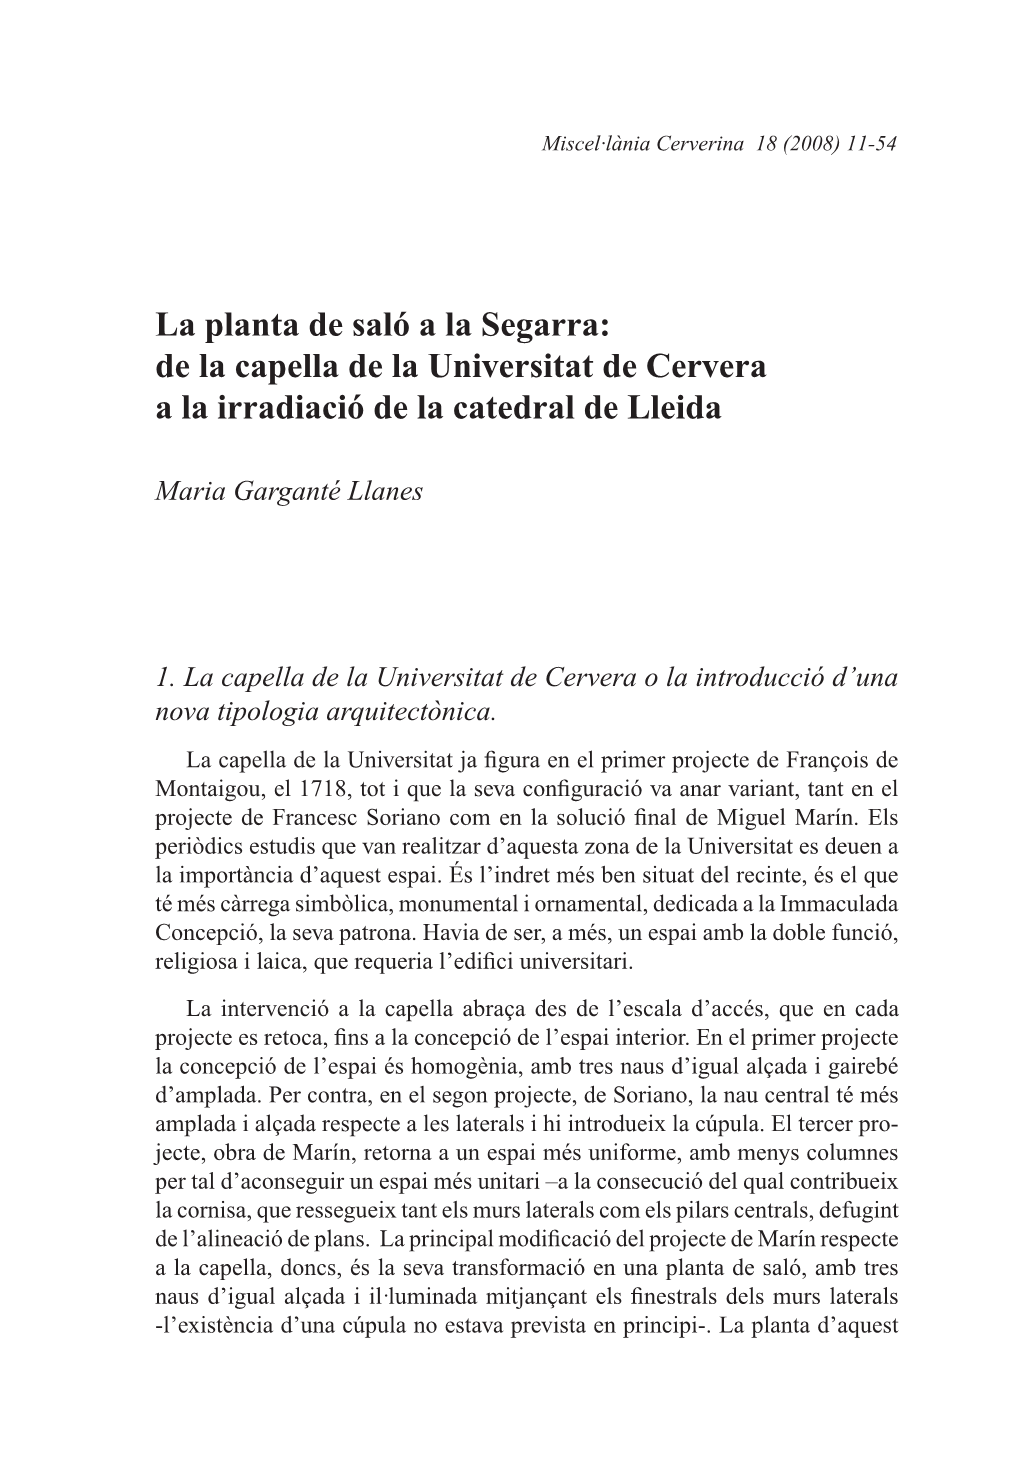 La Planta De Saló a La Segarra: De La Capella De La Universitat De Cervera a La Irradiació De La Catedral De Lleida